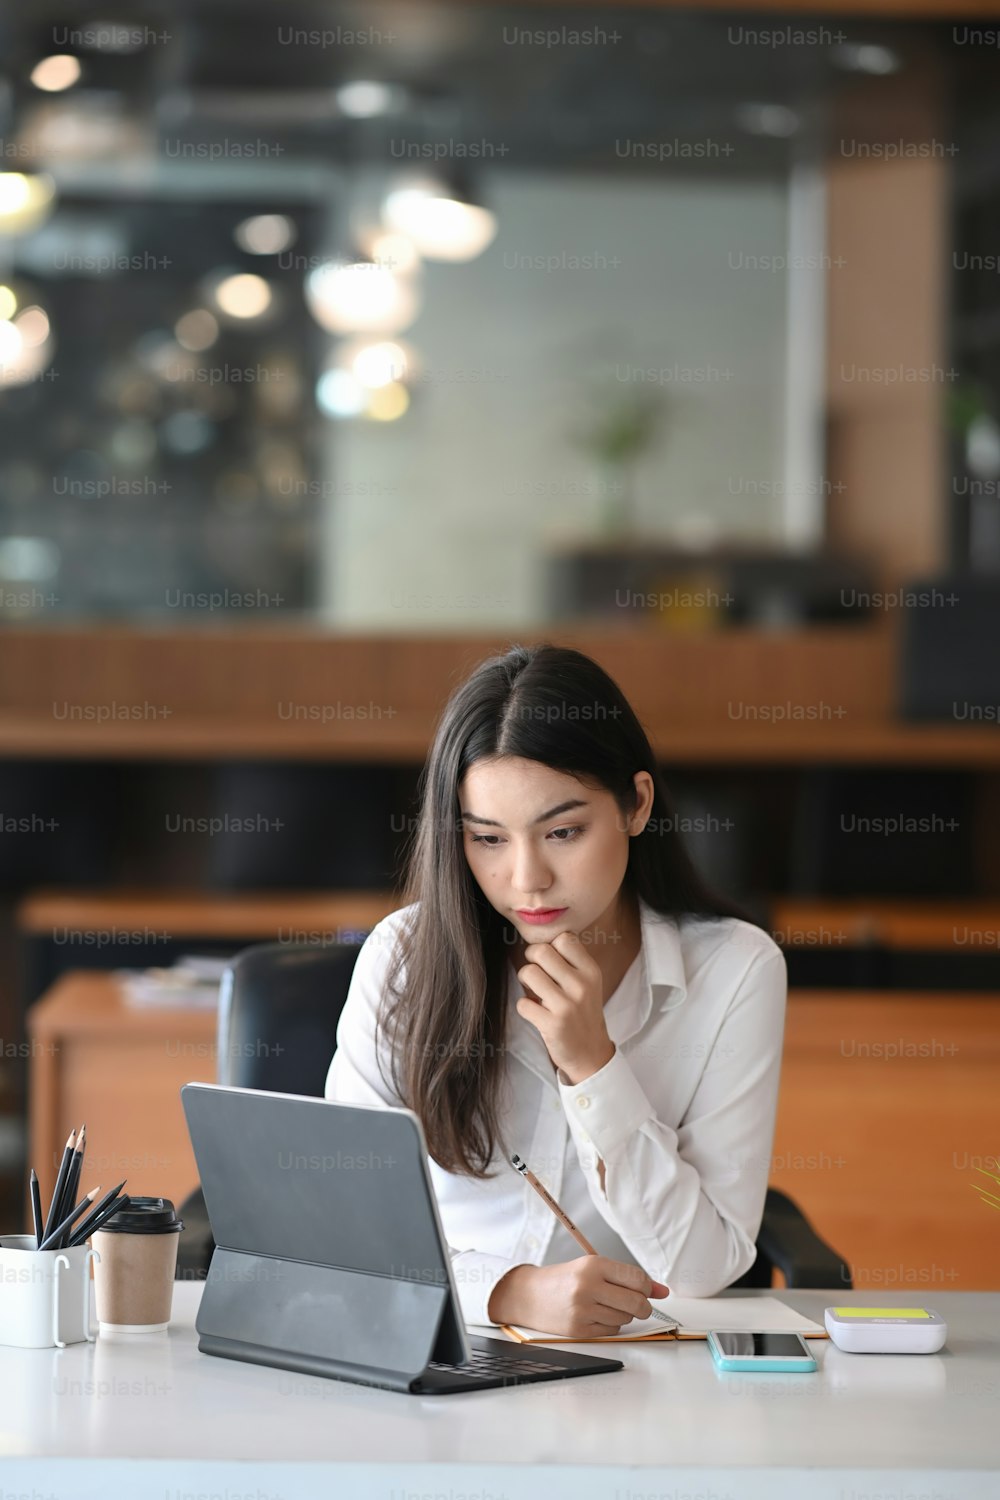 그녀의 직장에 앉아 있는 동안 태블릿 컴퓨터의 화면을 보고 있는 매력적인 사업가의 초상화.